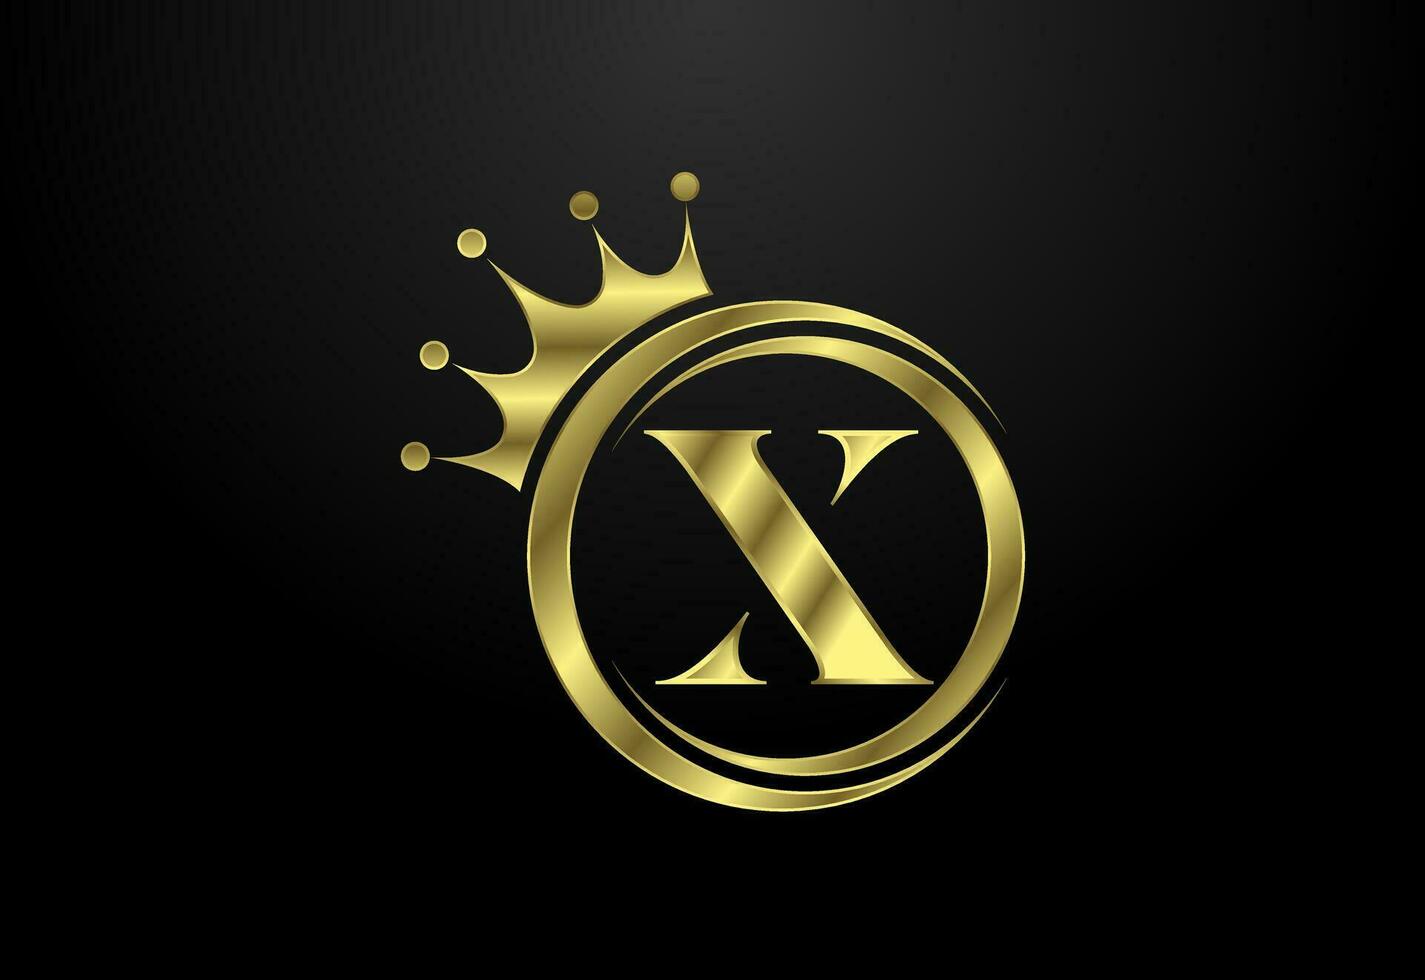 Anglais alphabet X avec une couronne. Royal, roi, reine luxe symbole. Police de caractère emblème. vecteur illustration